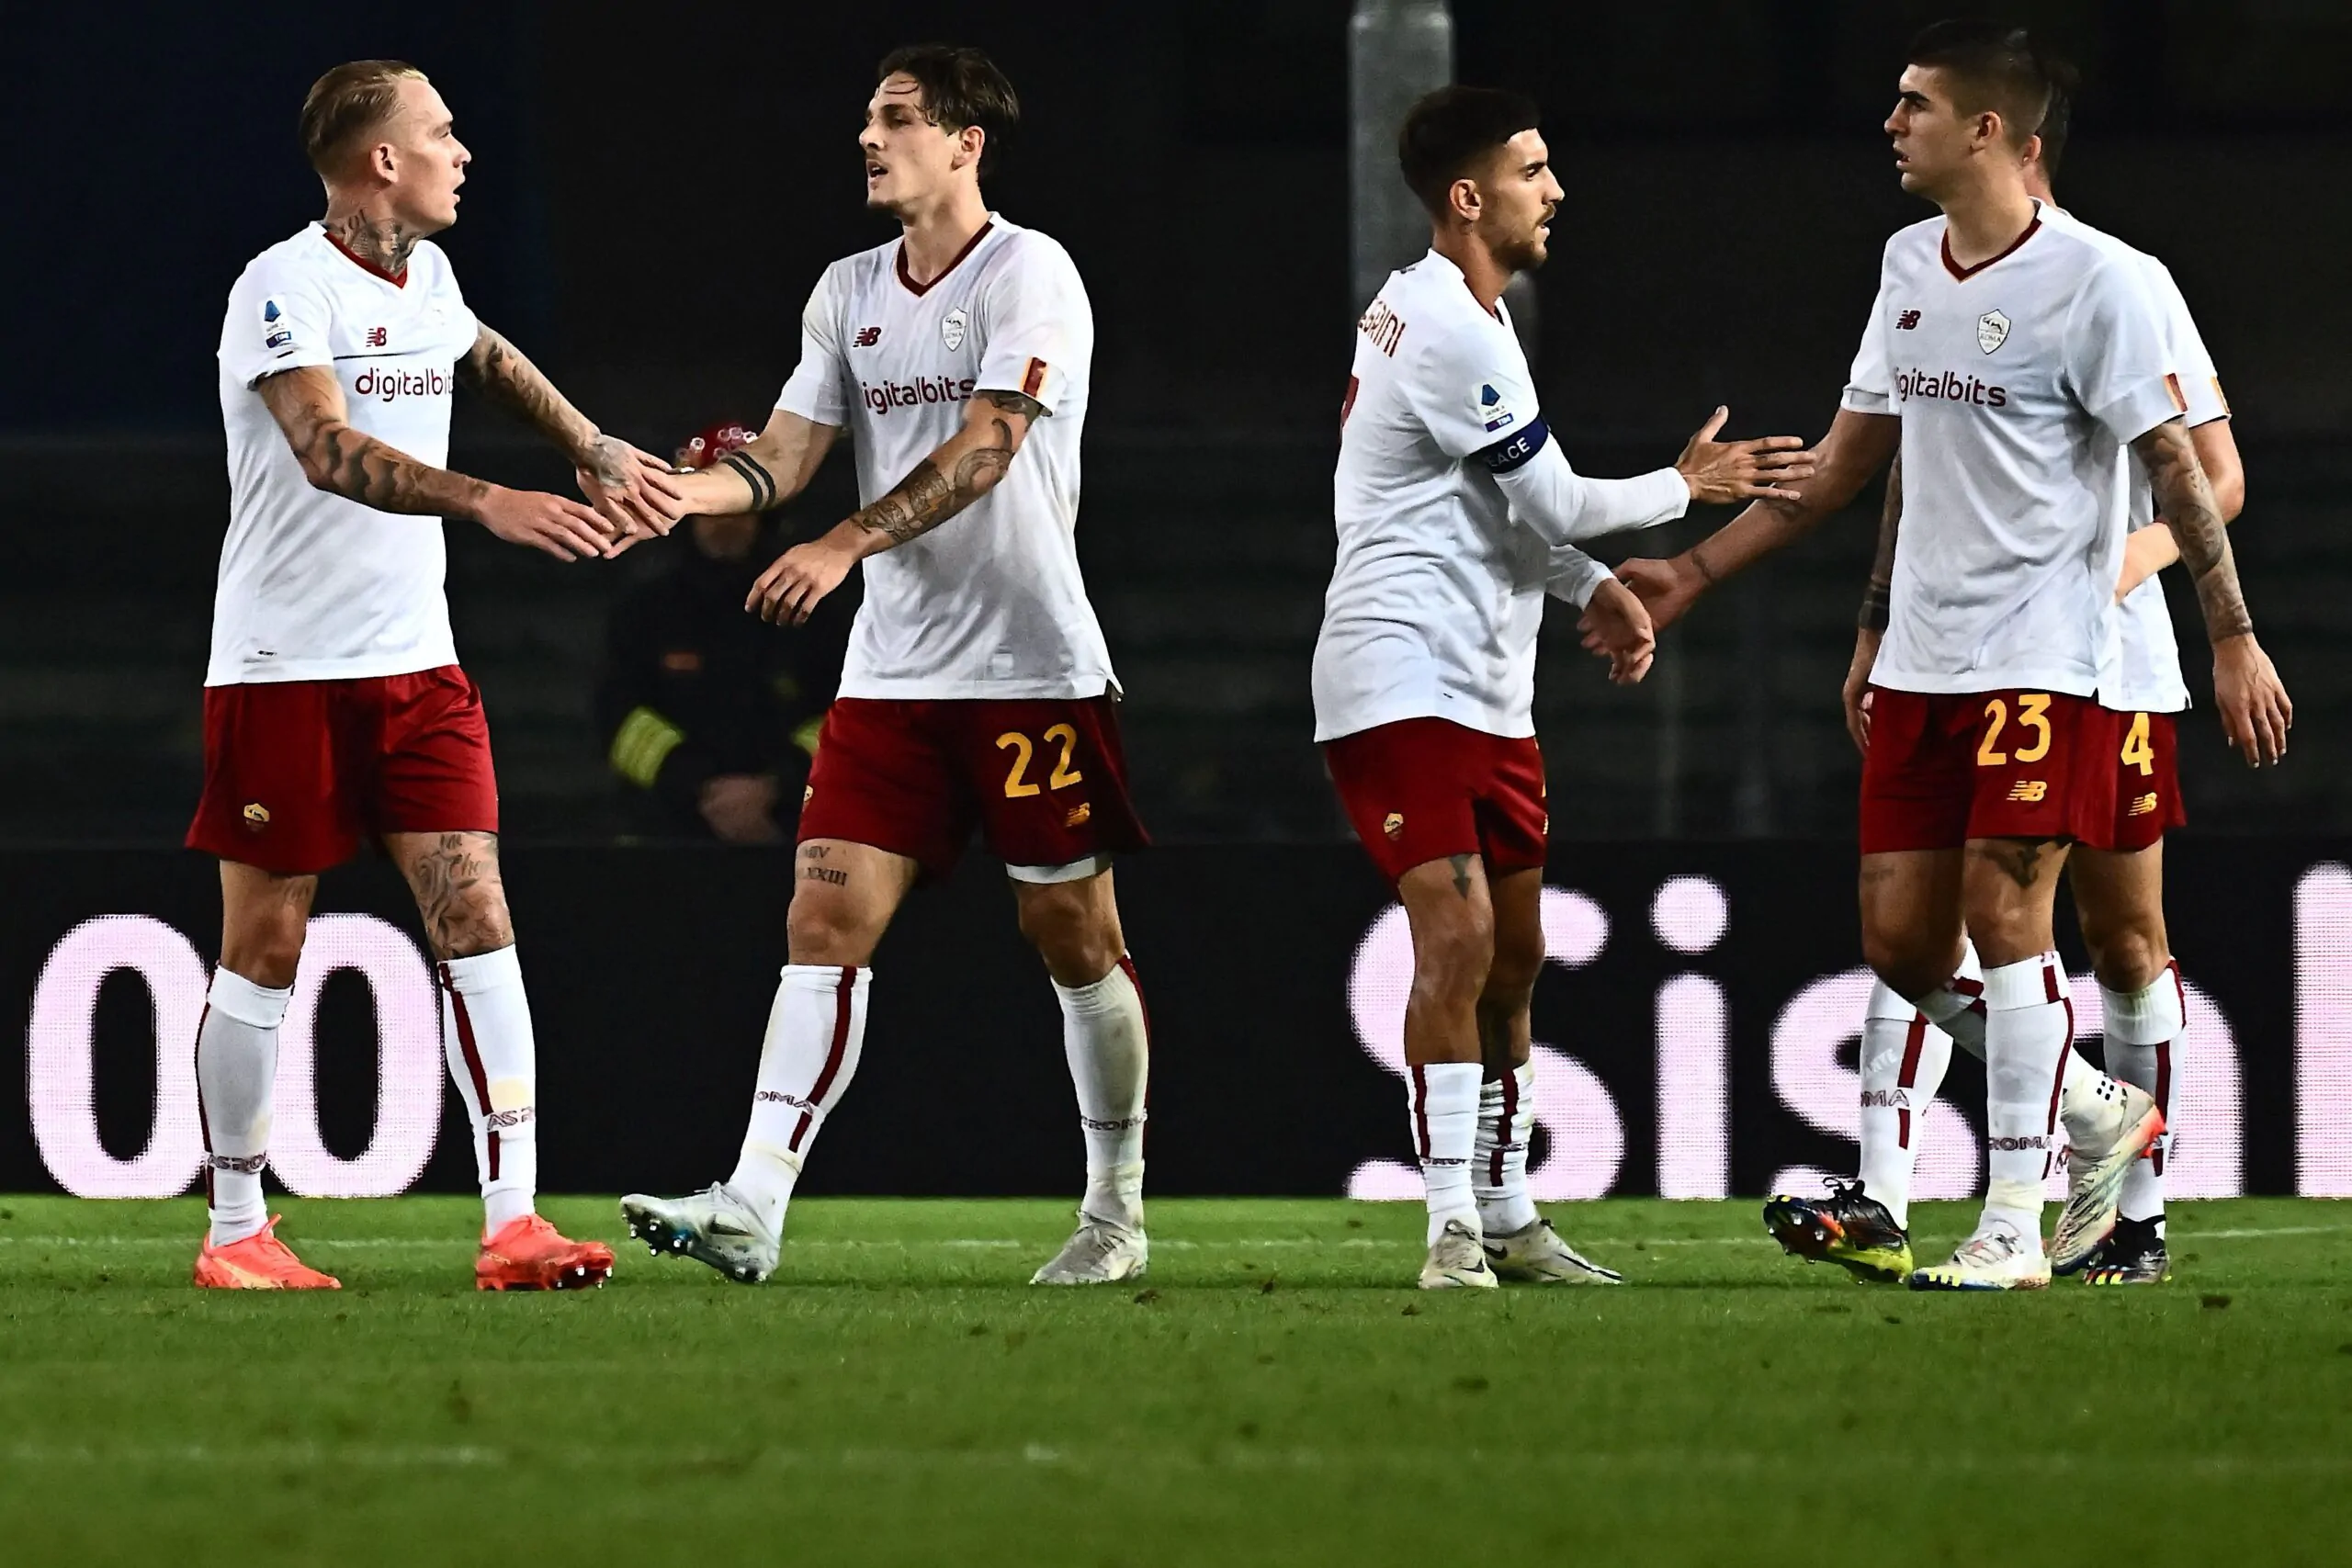 Milan-Roma, buone notizie per Mourinho: recuperati due giocatori